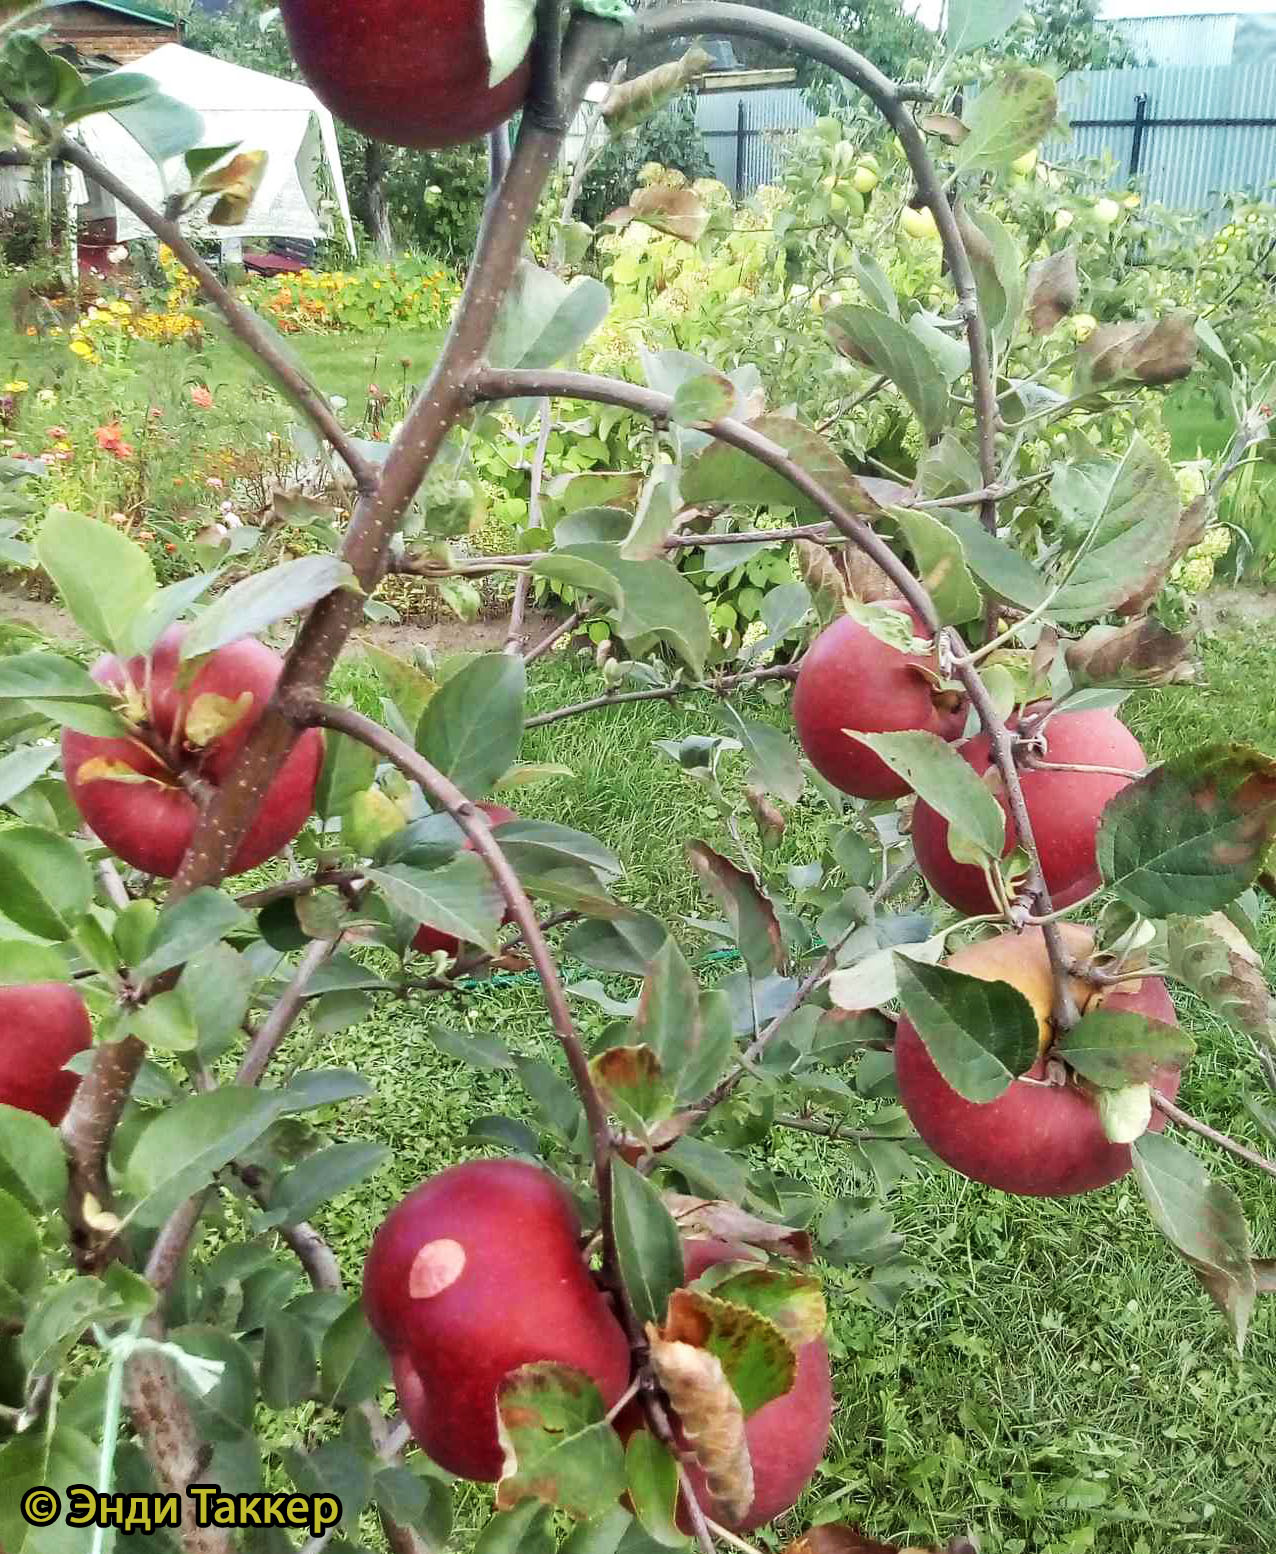 Яблоня Редкрофт - описание сорта и фото яблок